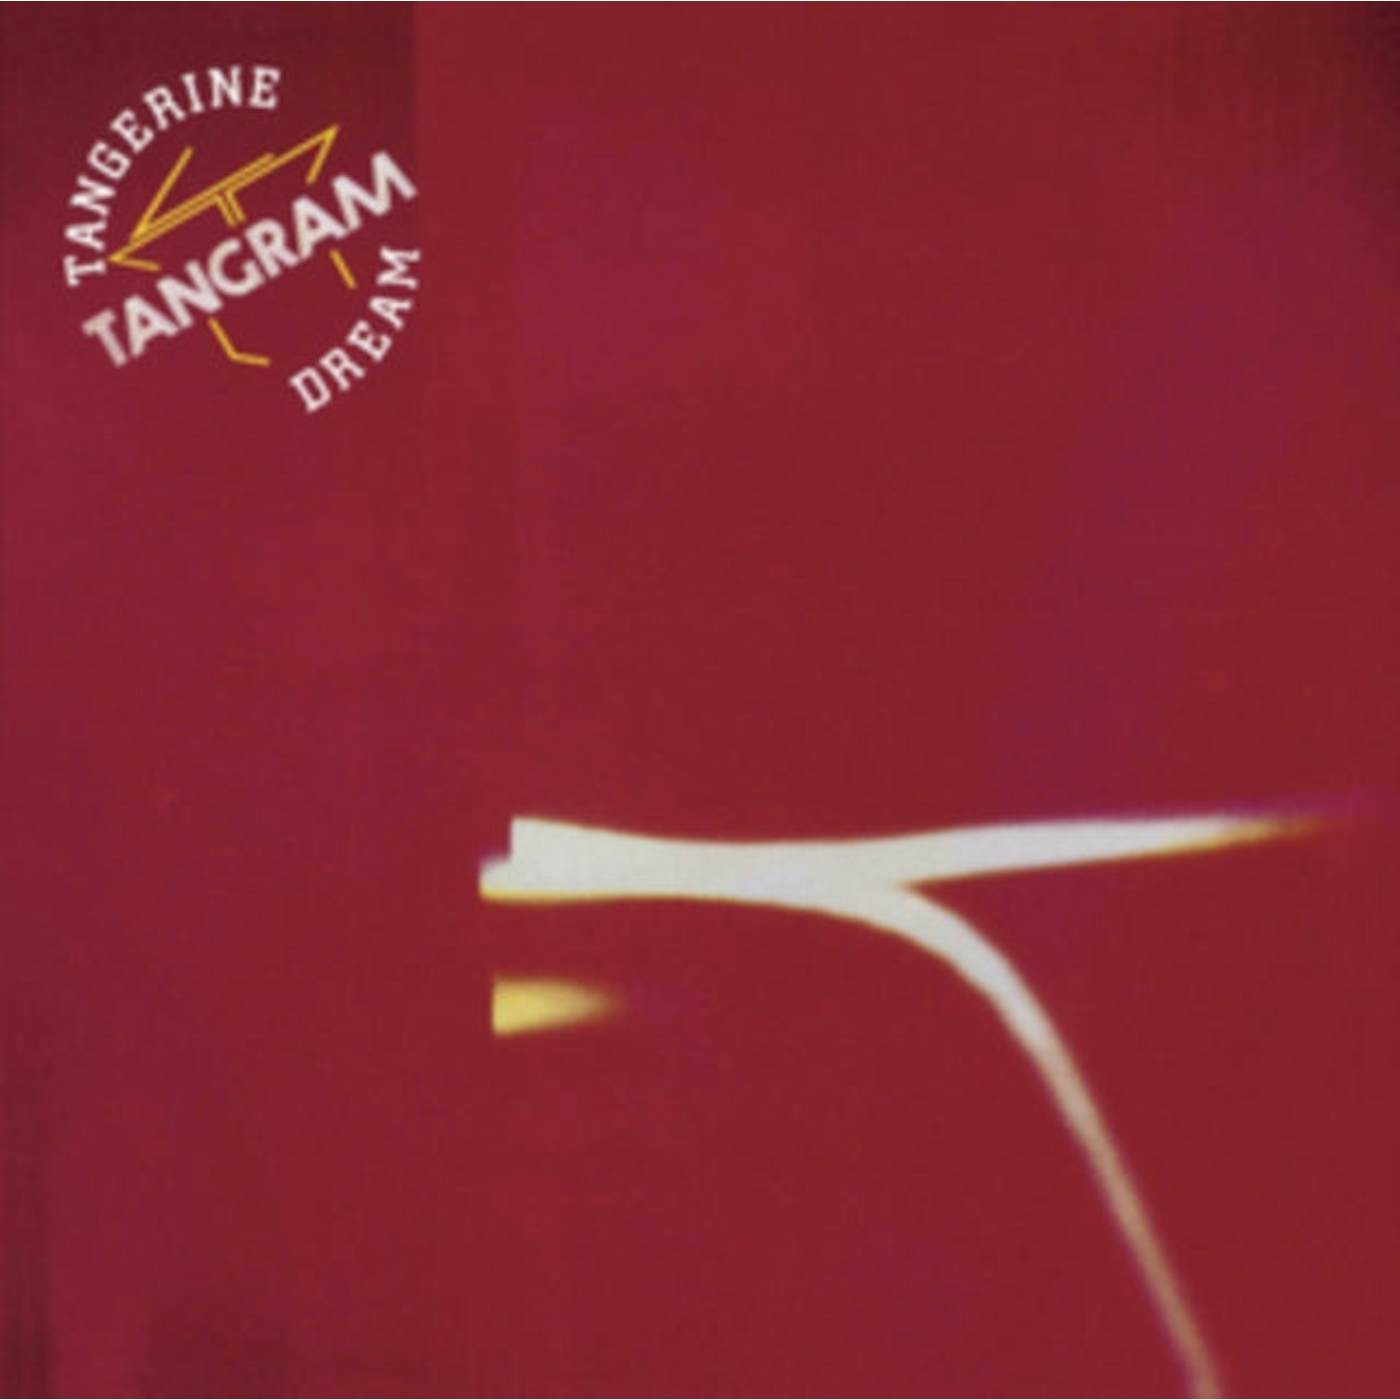 Tangerine Dream CD - Tangram